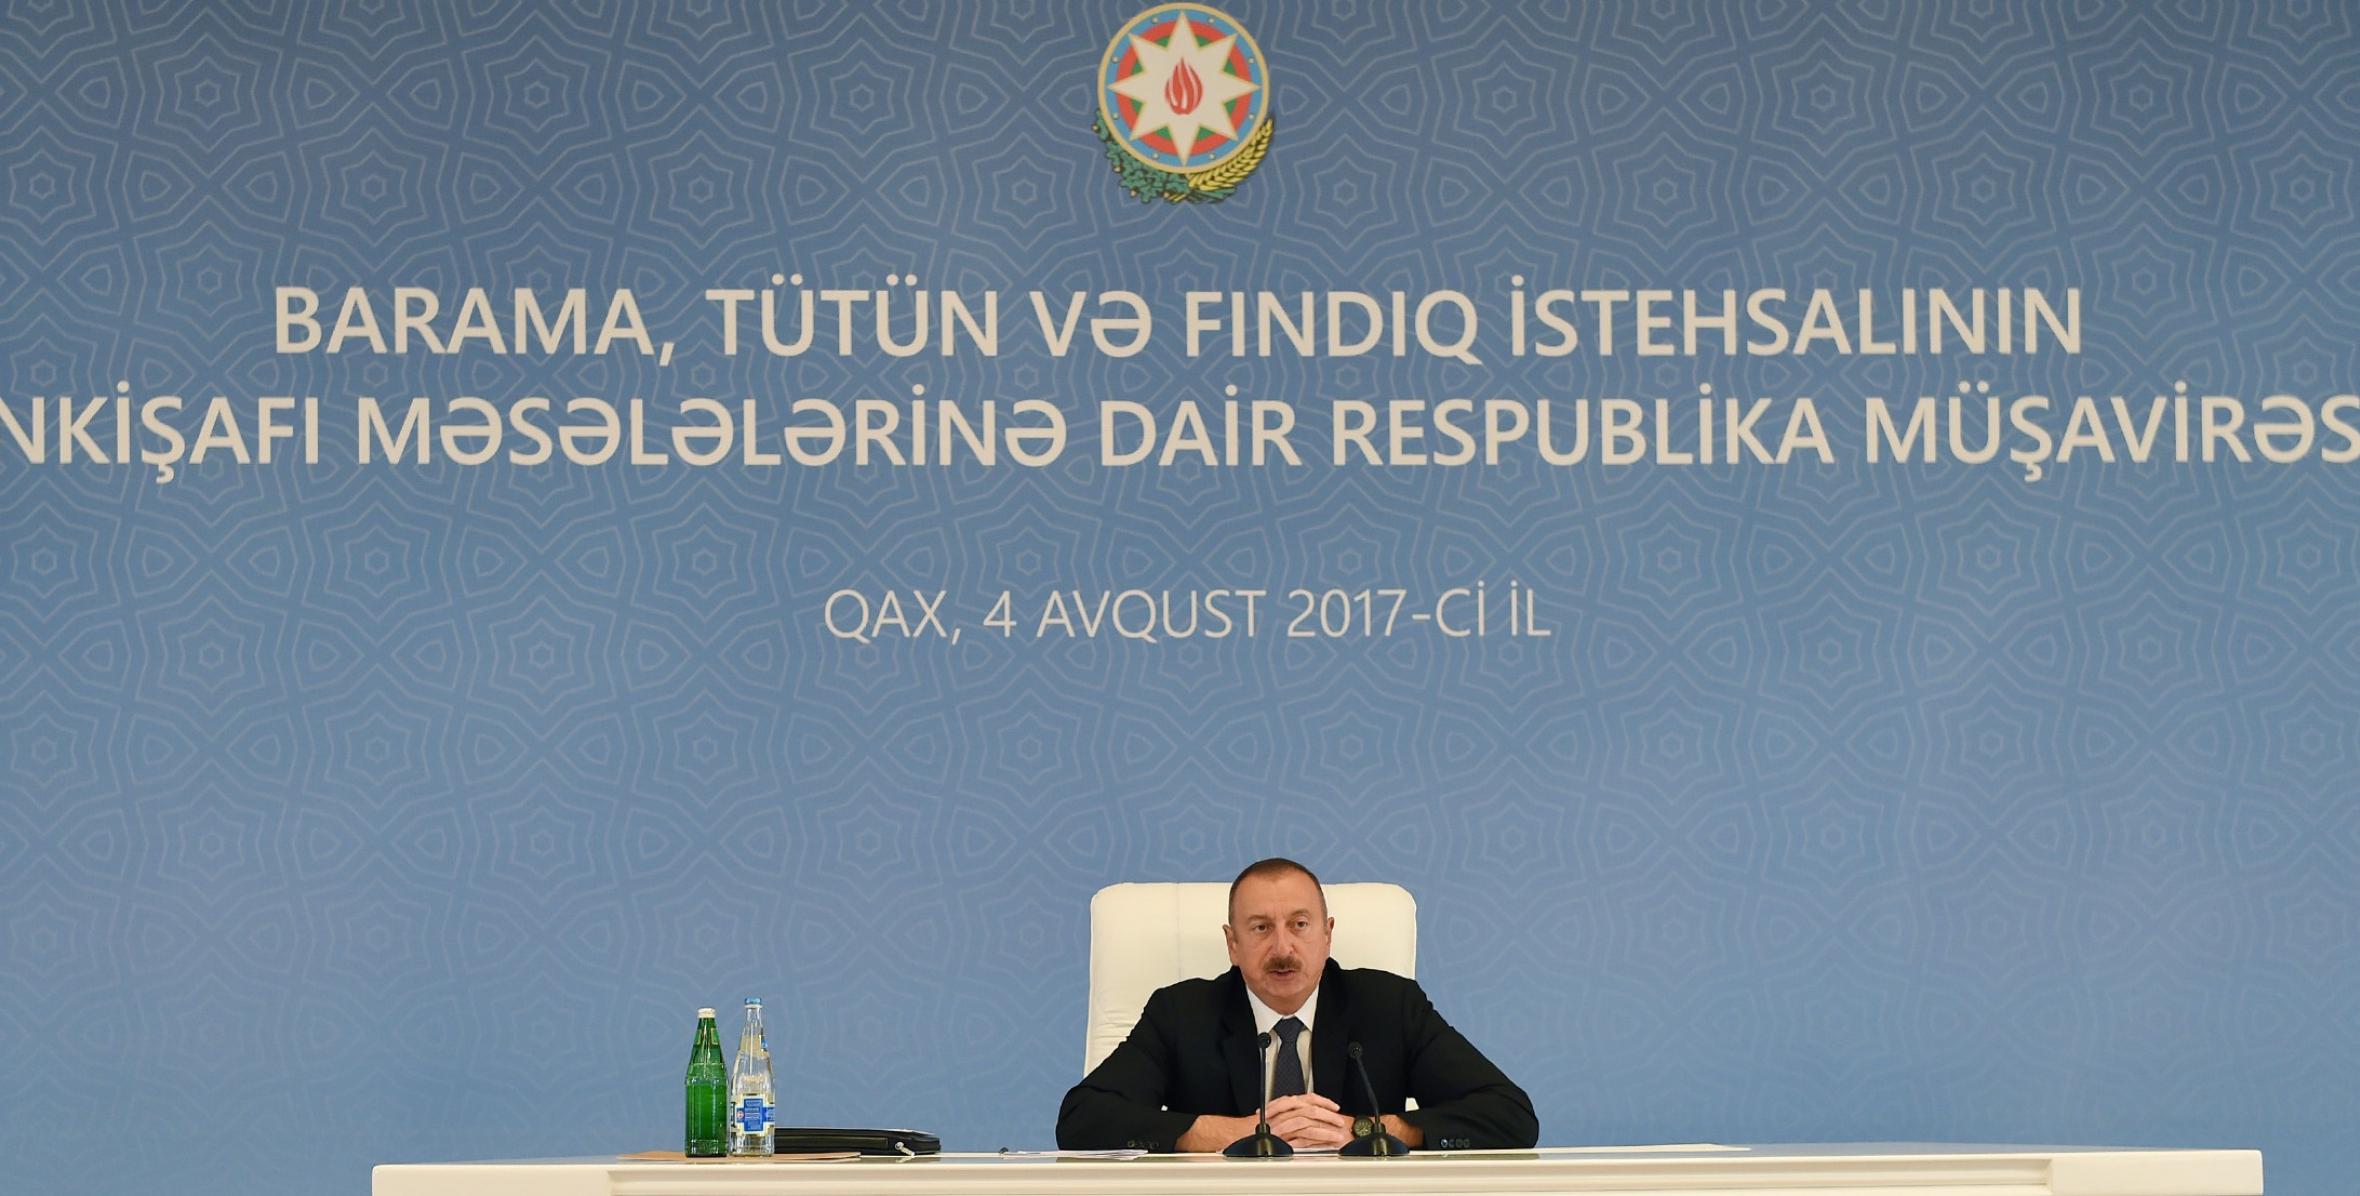 Заключительная речь Ильхама Алиева на общереспубликанское совещание по вопросам развития шелководства, табаководства и фундуководства